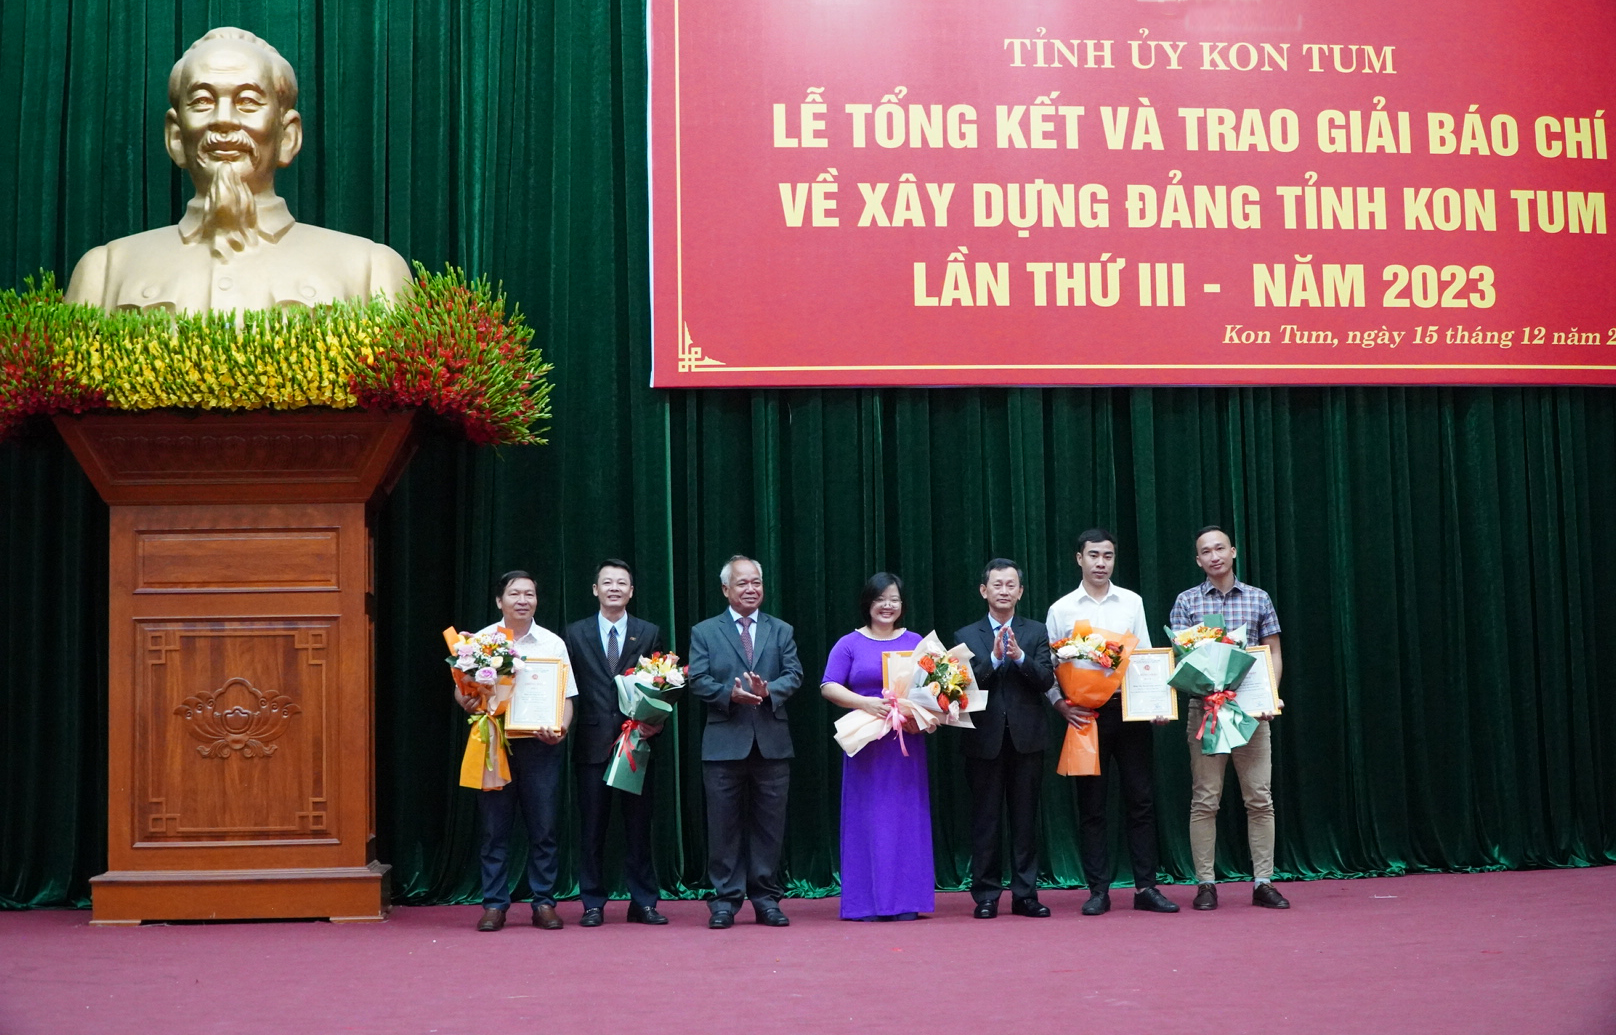 Giải báo chí về xây dựng Đảng (Búa liềm vàng) của Đảng bộ tỉnh Kon Tum lần thứ IV - năm 2024